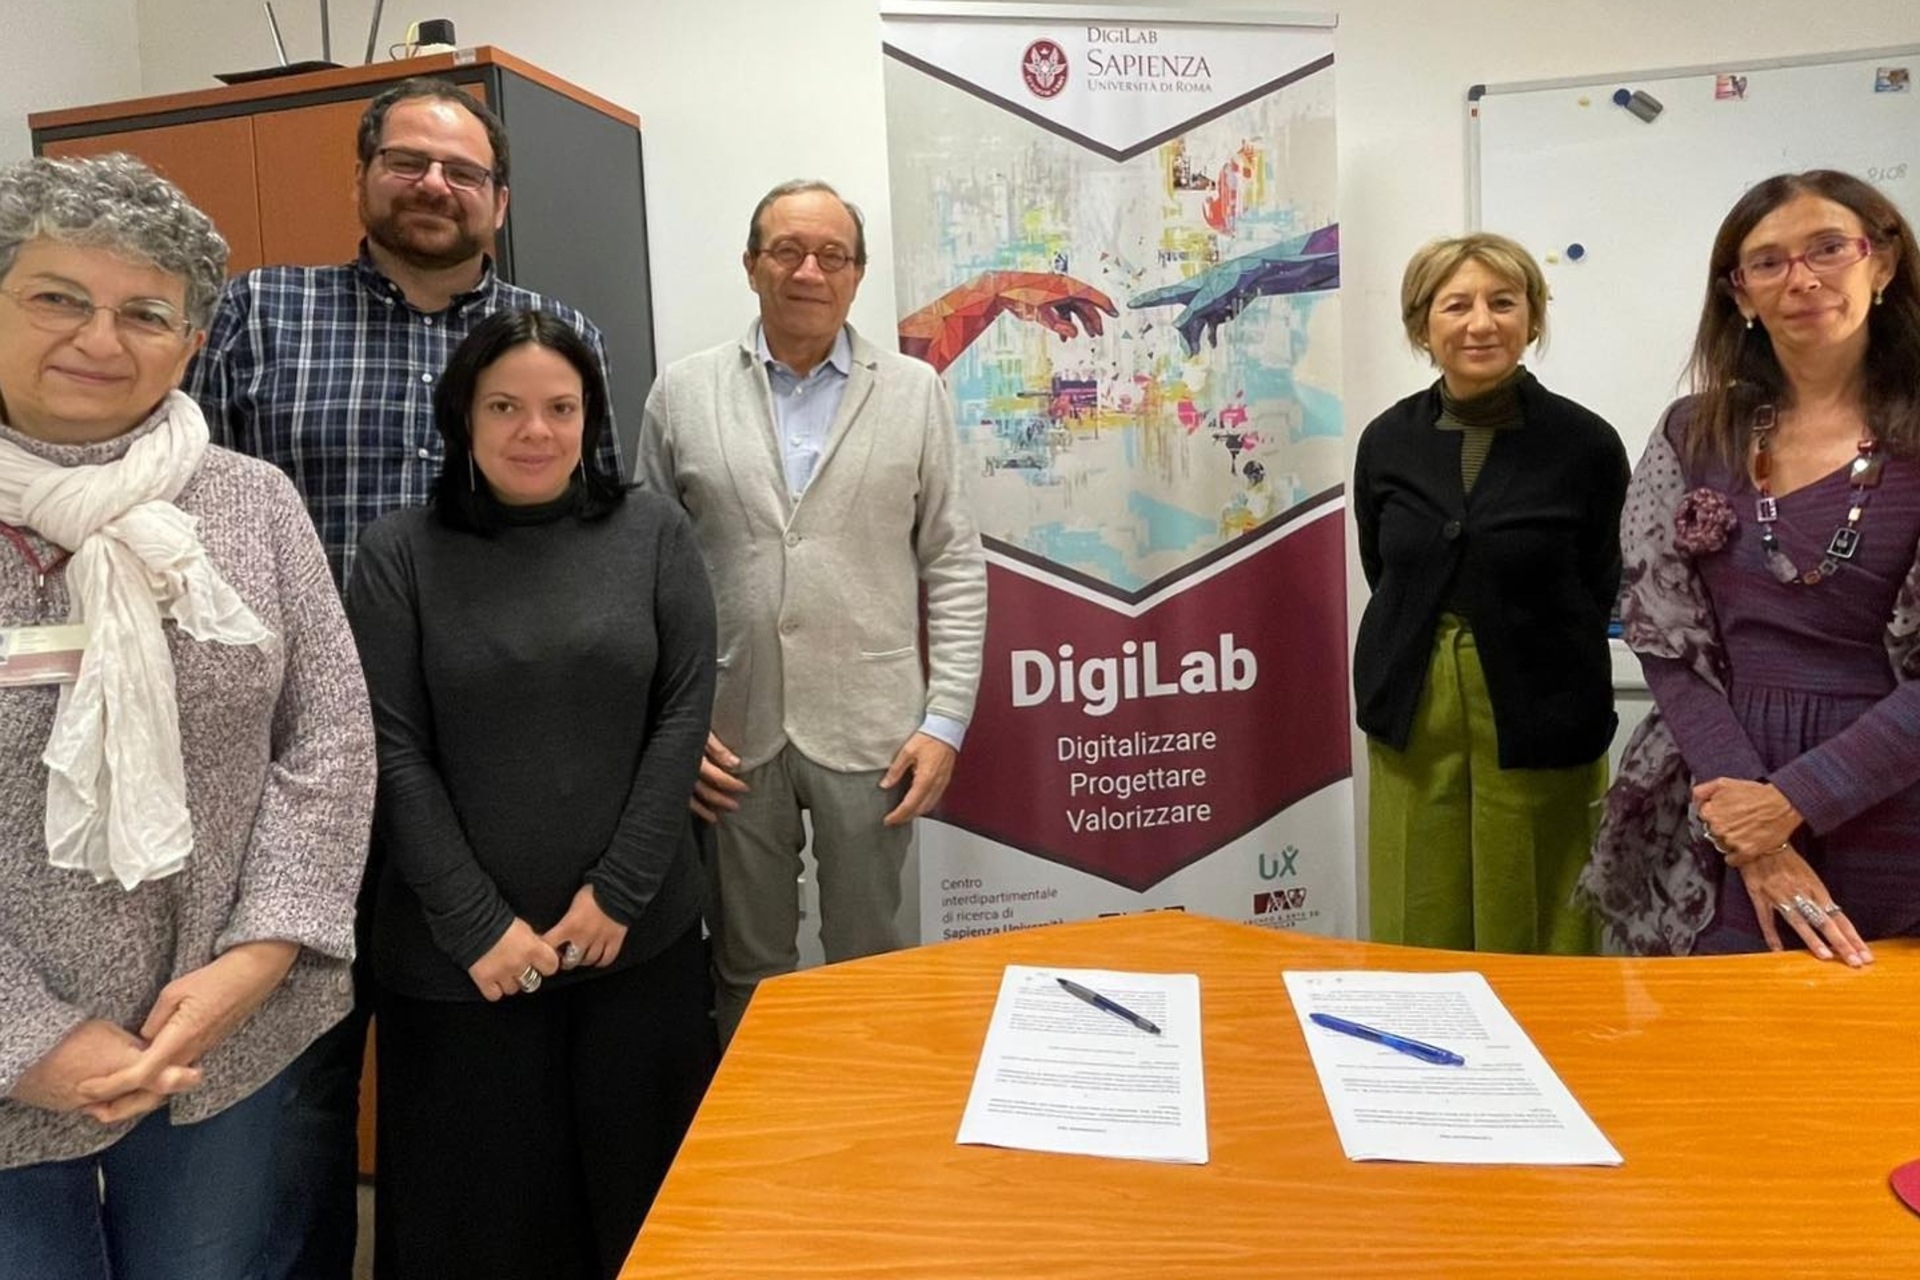 ArcheoVerso: Giovanna Barni, CoopCulturen innovaatio- ja kehitysjohtaja, ja Paola Buzi, johtaja Rooman Sapienza-yliopiston DigiLab-tutkimuskeskuksesta, ovat allekirjoittaneet sopimuksen kulttuuriprojektin käynnistämisestä.